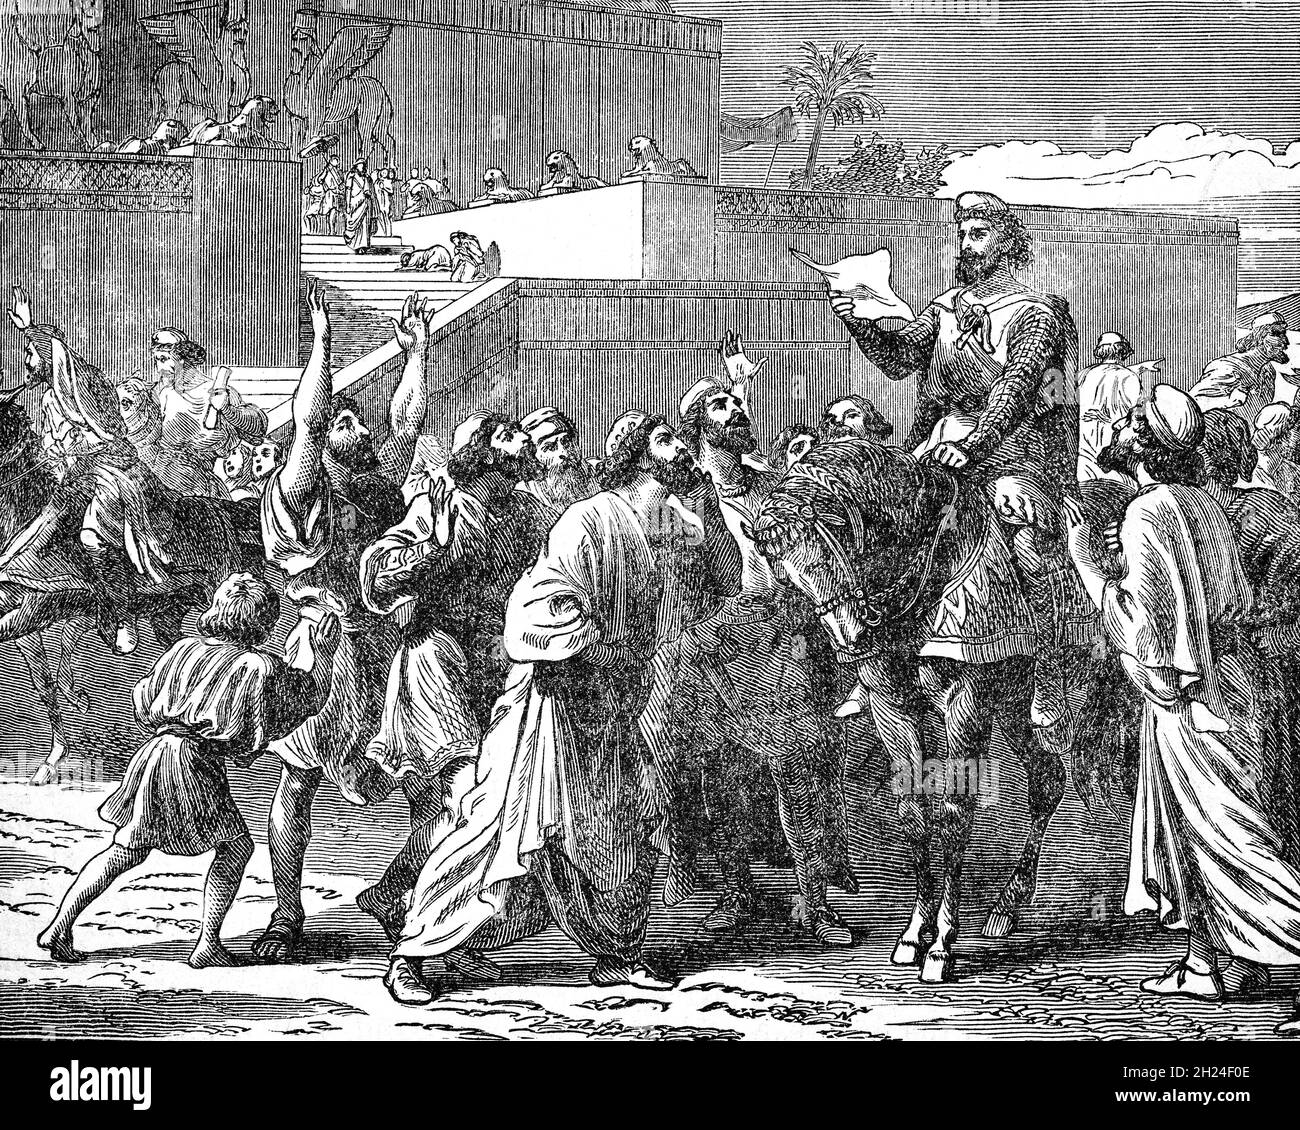 Eine Illustration des späten 19. Jahrhunderts von Cyaxares (625–585 v. Chr.), dem dritten und fähigsten König der Medien, der seine Untertanen aufforderte, ihr Land von den Skythen zu befreien. Als erster, der seine Truppen in getrennte Sektionen von Speermännern, Bogenschützen und Reitern aufteilte, Vereinigte er die meisten iranischen Stämme des alten Iran. Durch die Eroberung benachbarter Gebiete verwandelte Cyaxares das mittlere Reich in eine regionale Macht, was den Sturz des neo-assyrischen Reiches erleichterte und die Skythen von den Medien abstieß. Stockfoto